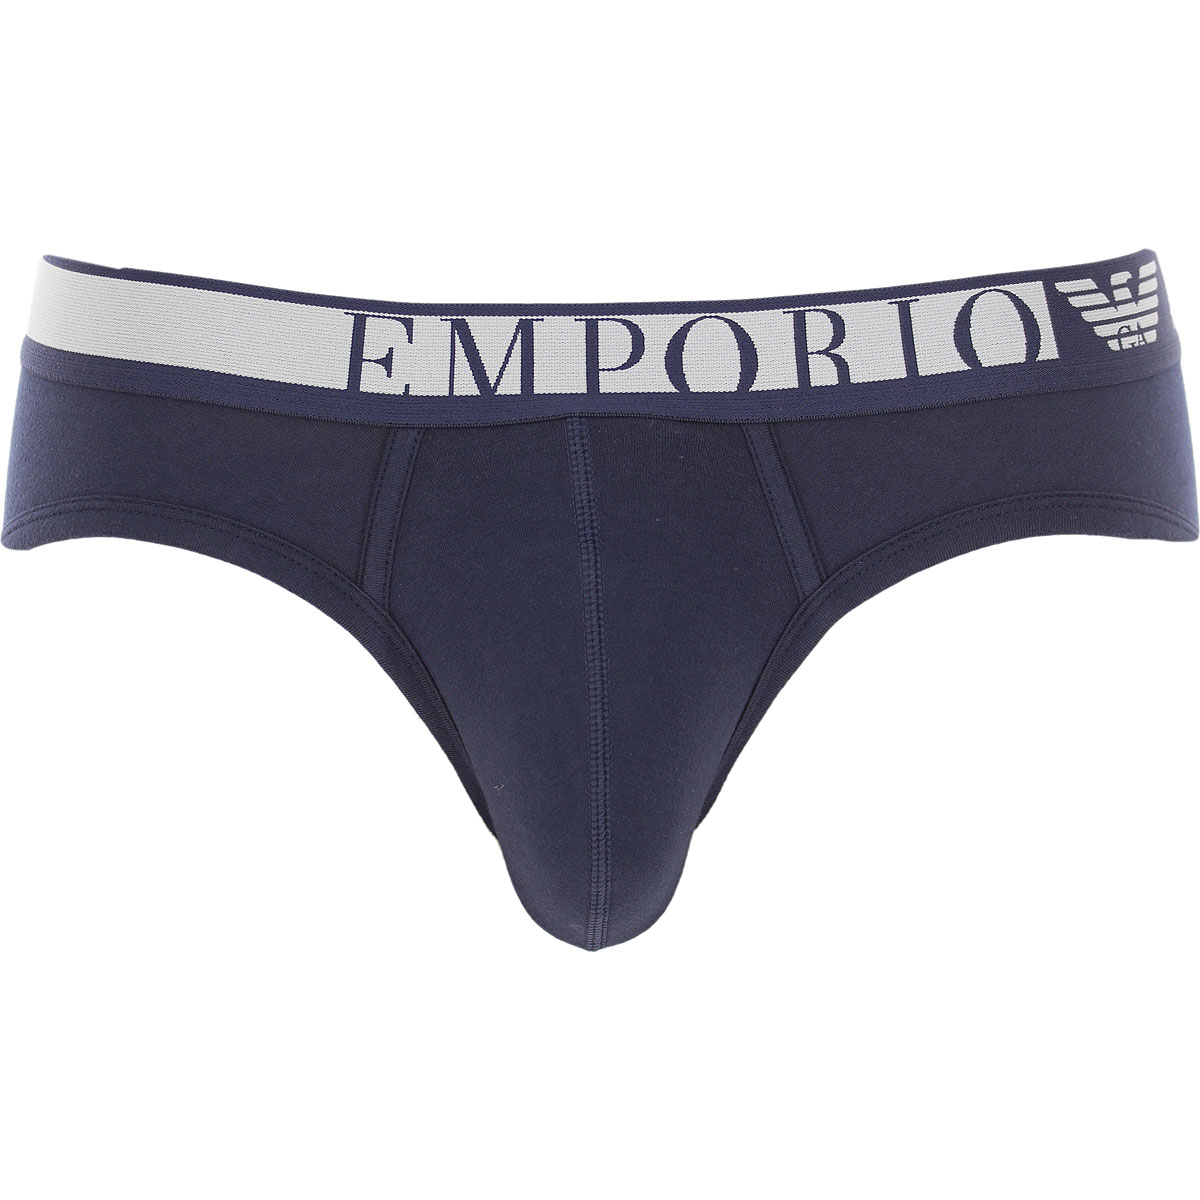 Mens Underwear Emporio Armani, Style code: 111617-2f525-00135